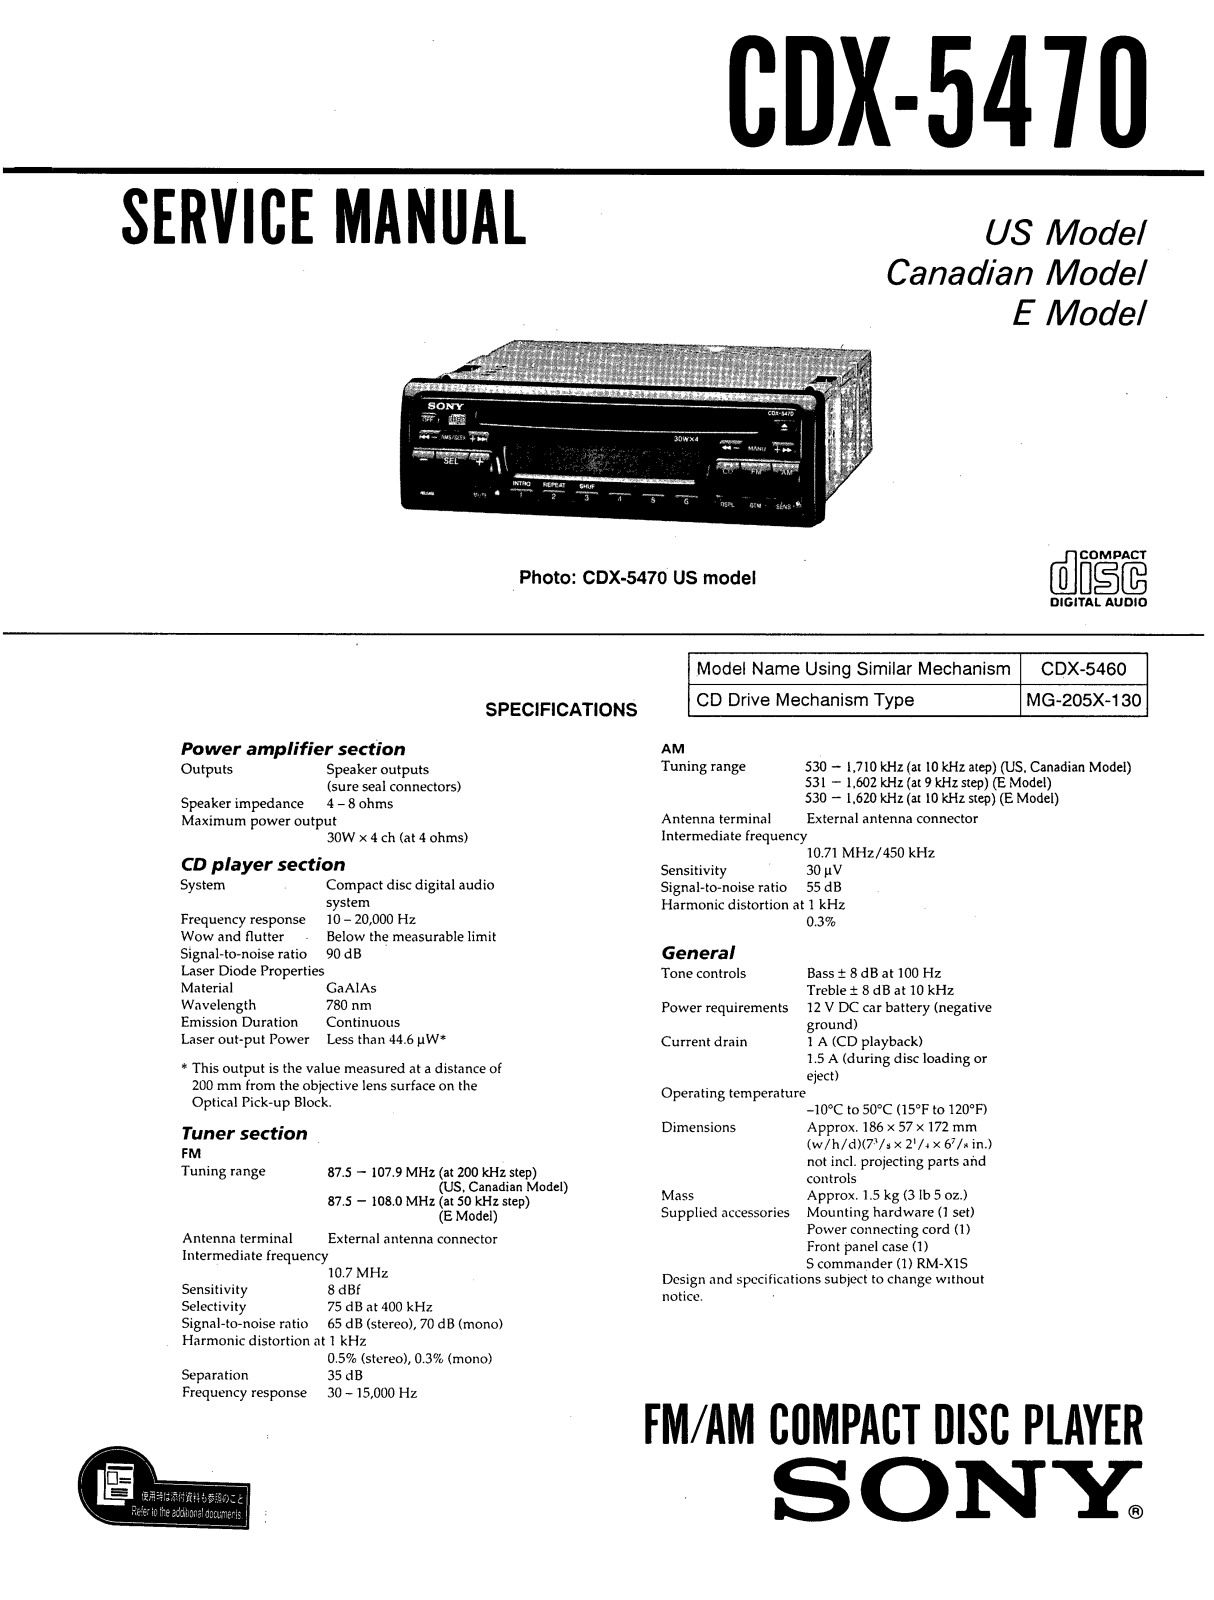 Sony CDX-5470 Service manual